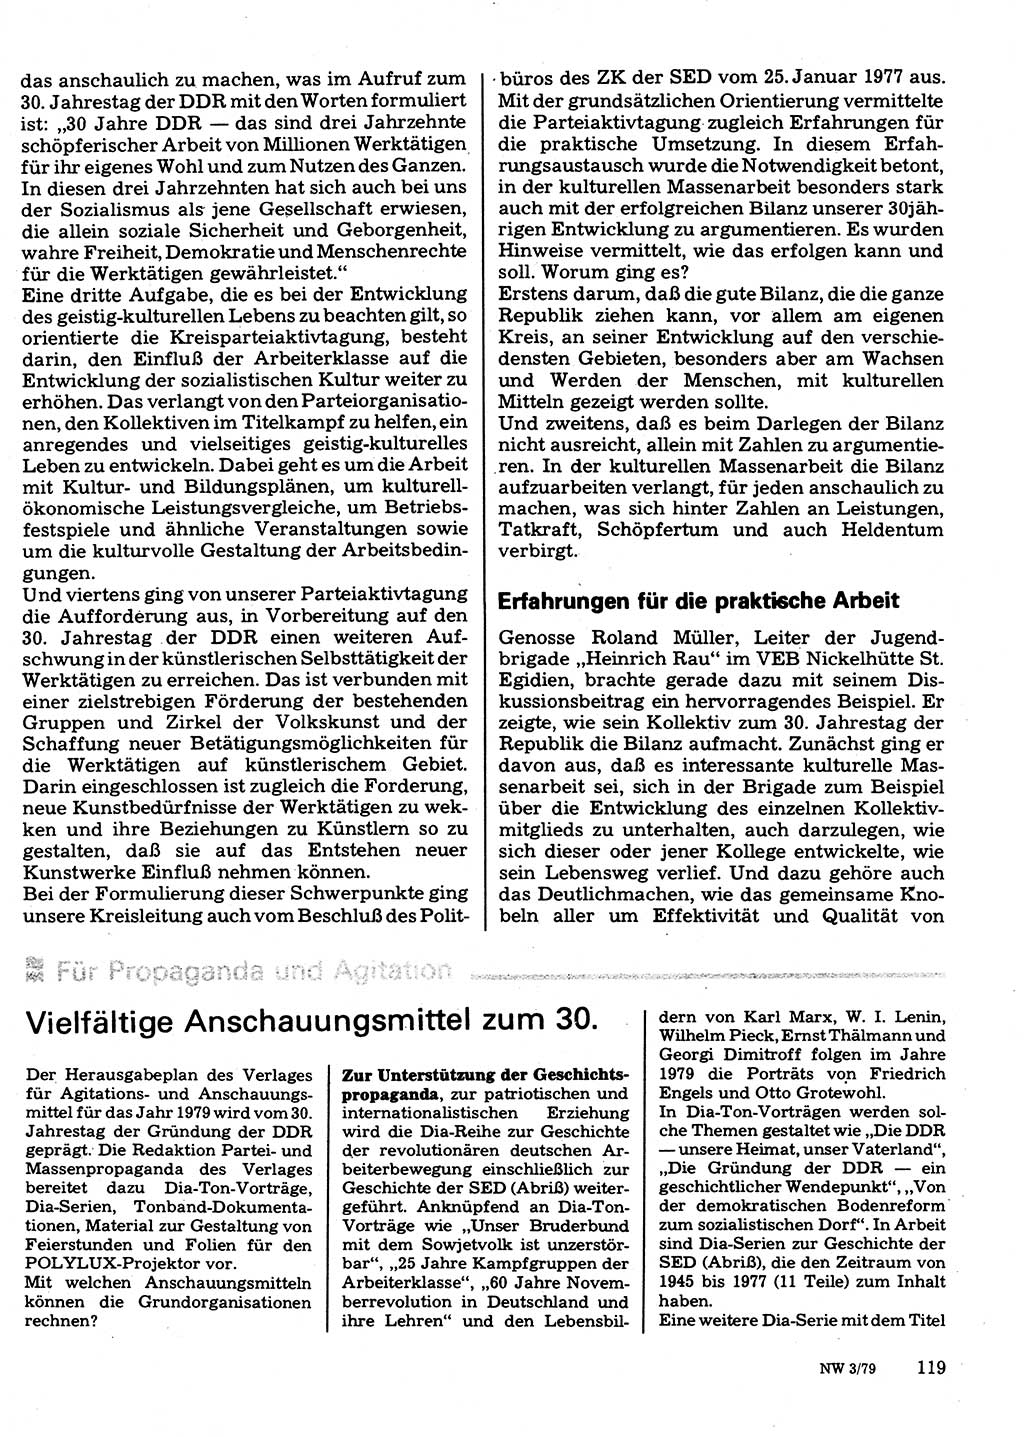 Neuer Weg (NW), Organ des Zentralkomitees (ZK) der SED (Sozialistische Einheitspartei Deutschlands) für Fragen des Parteilebens, 34. Jahrgang [Deutsche Demokratische Republik (DDR)] 1979, Seite 119 (NW ZK SED DDR 1979, S. 119)